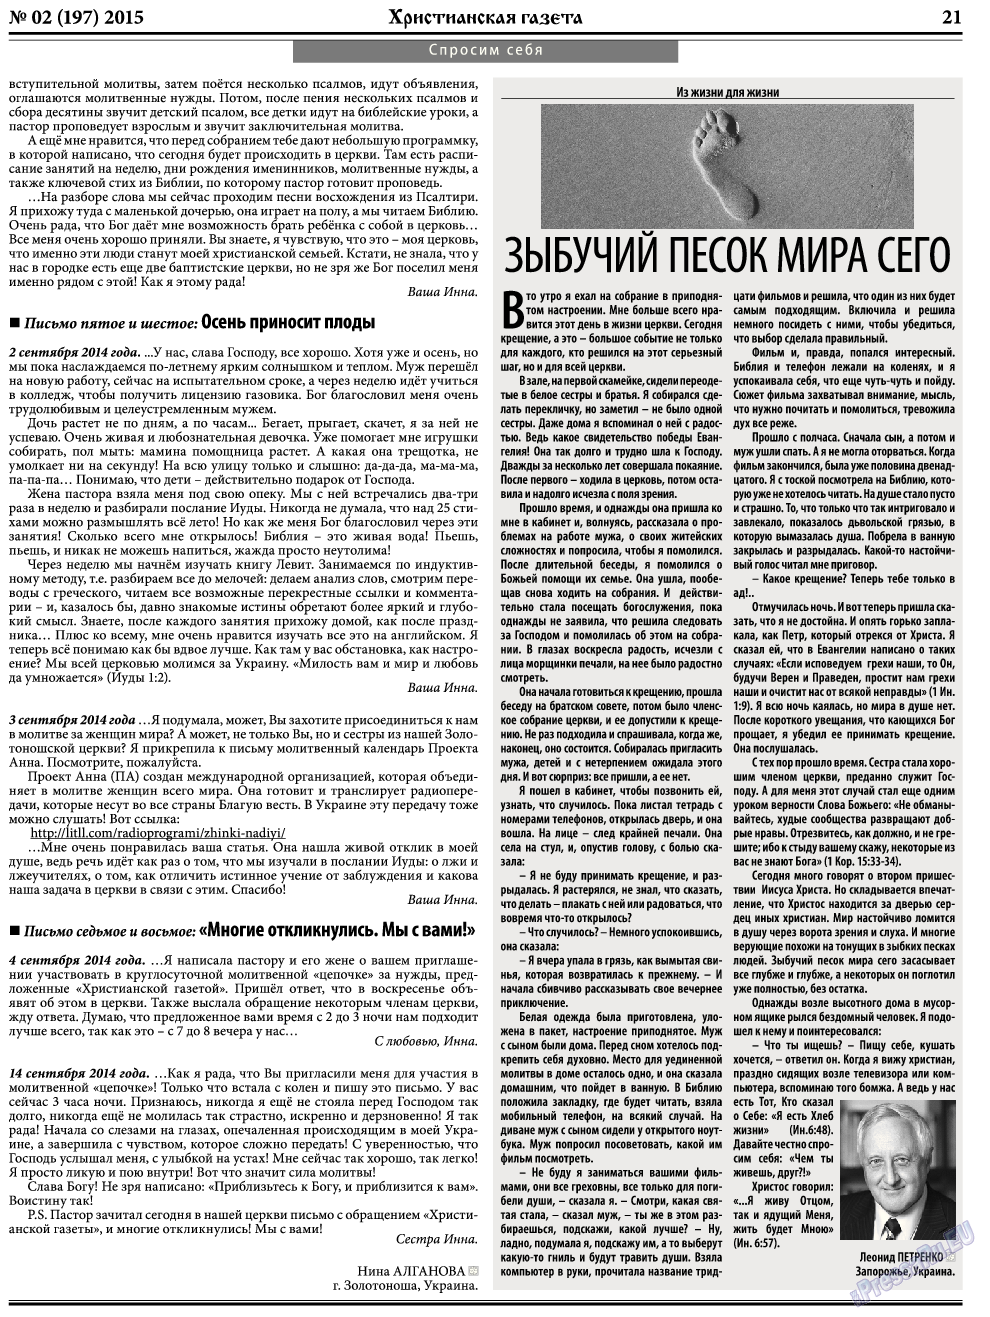 Христианская газета, газета. 2015 №2 стр.29